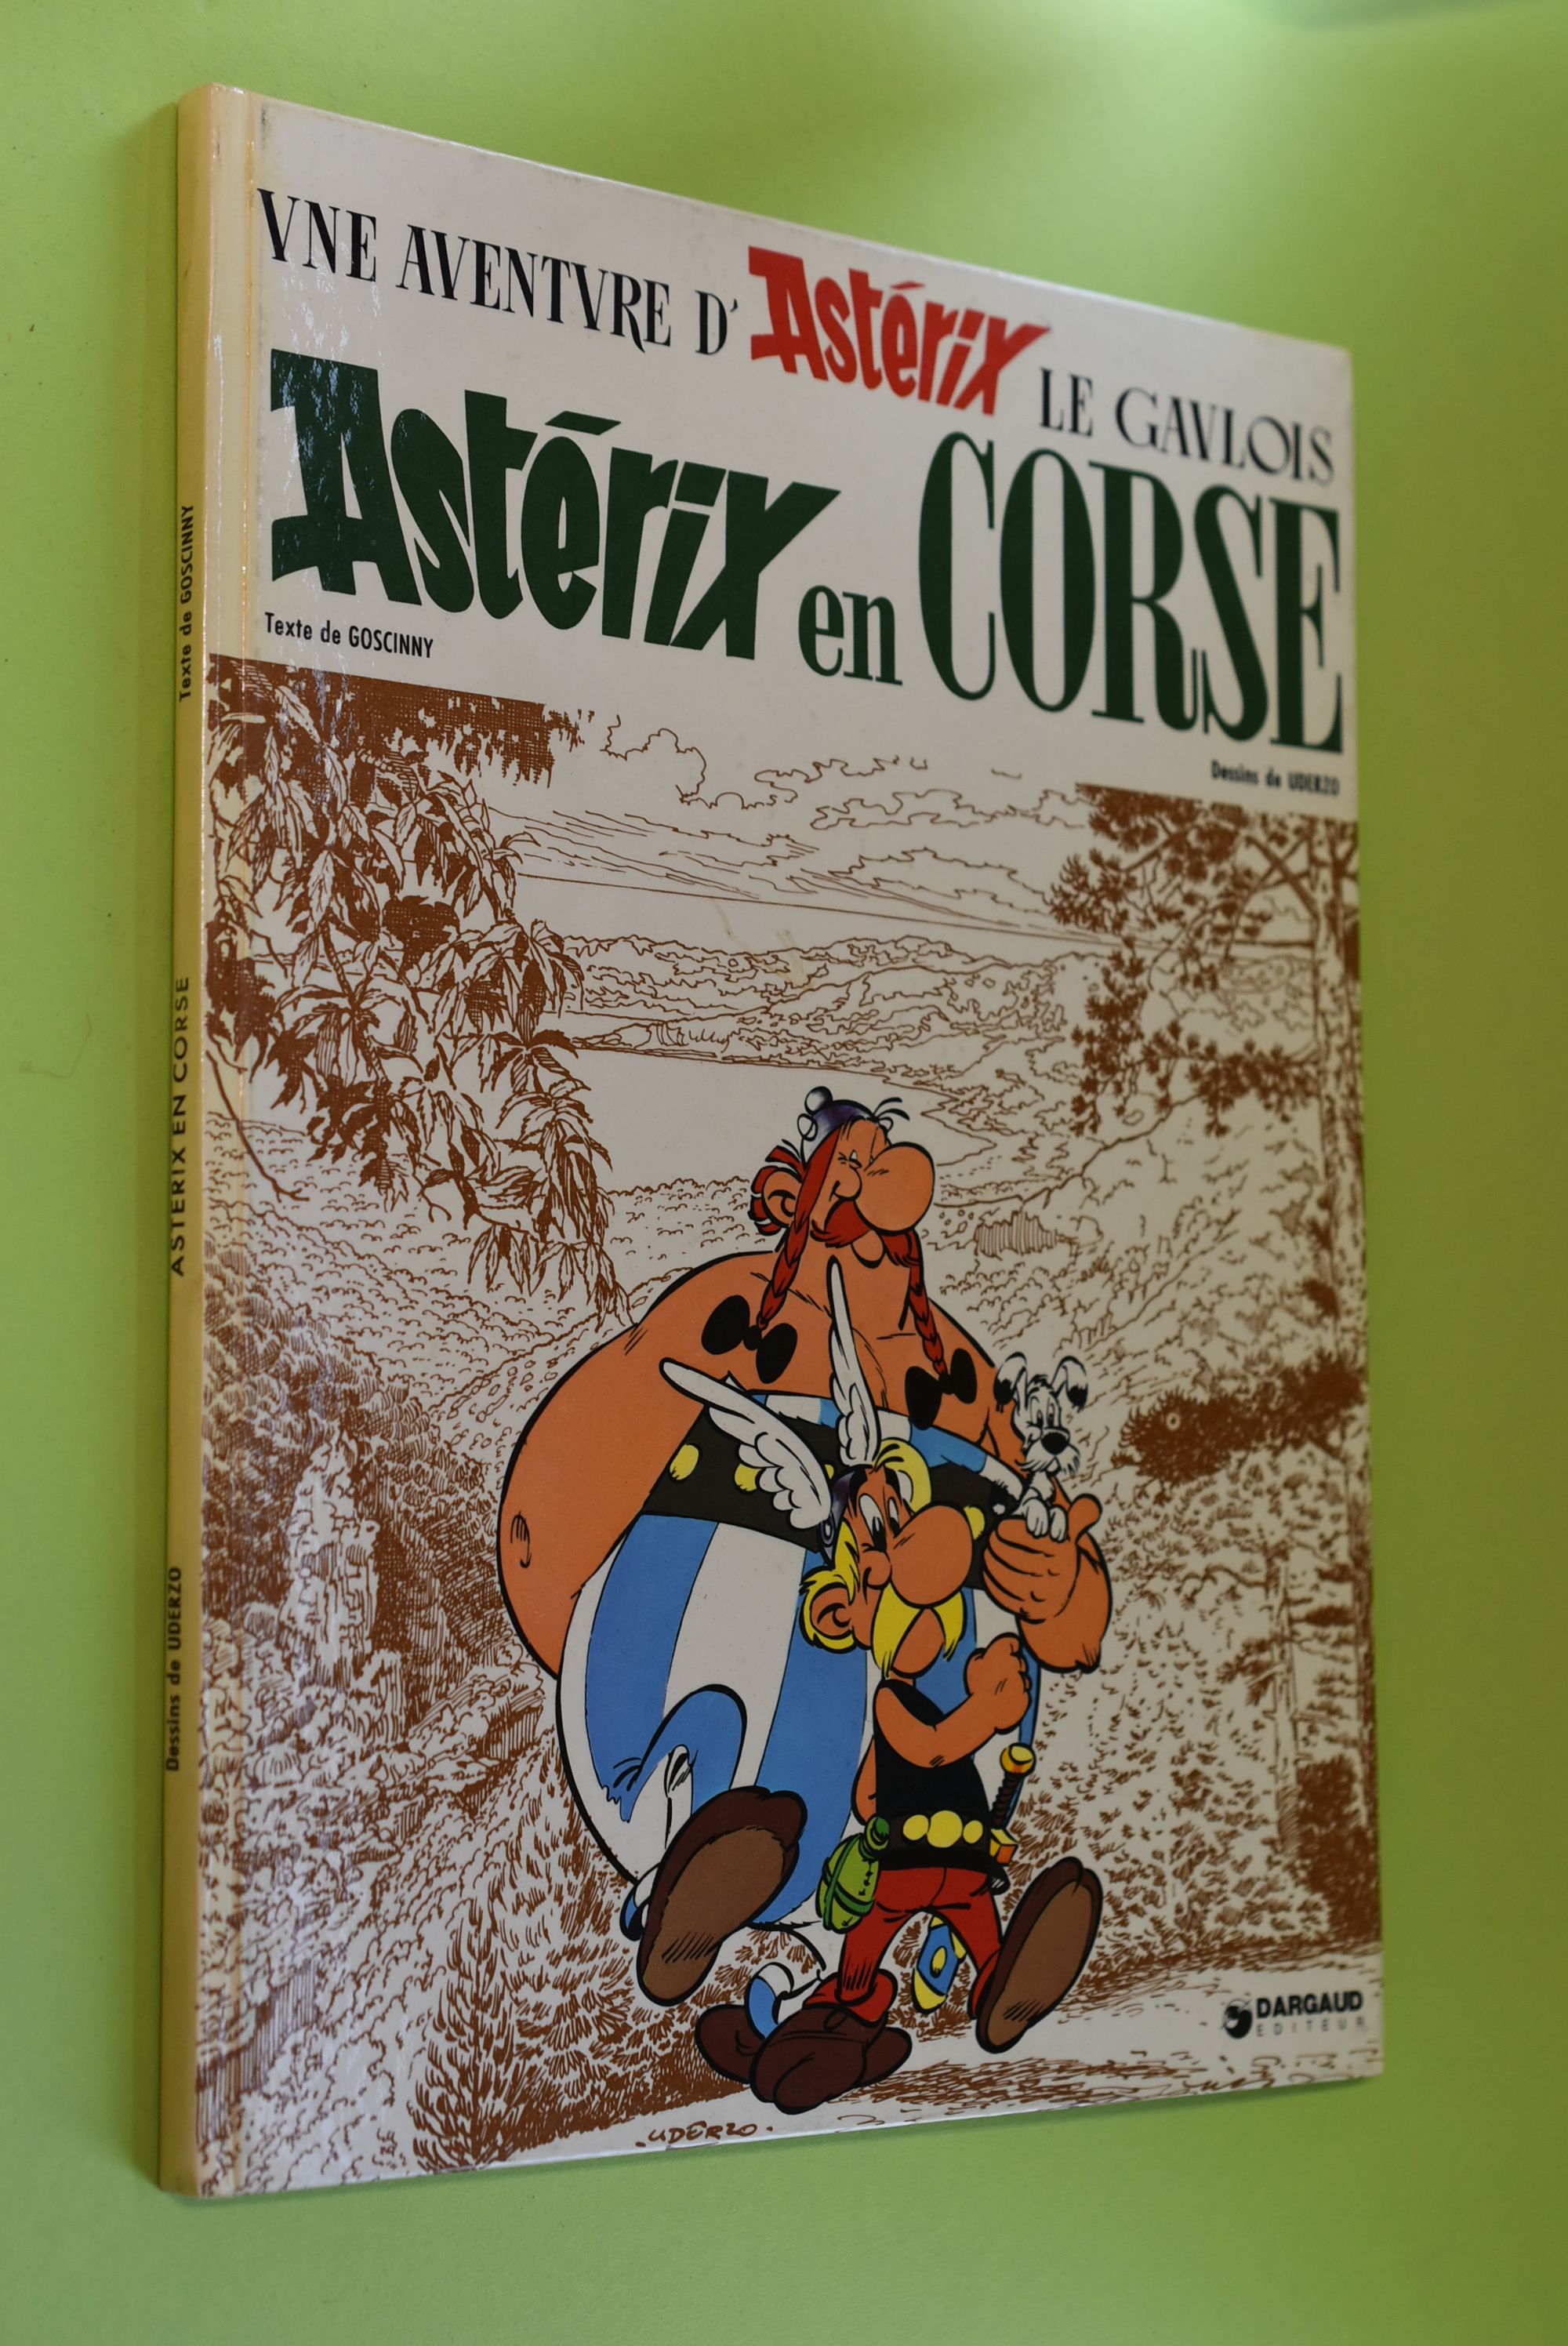 Une Aventure d`Asterix le Gaulois: Asterix en Corse Text von René Goscinny. Zeichn. von Albert Uderzo. - Goscinny, René und Albert Uderzo